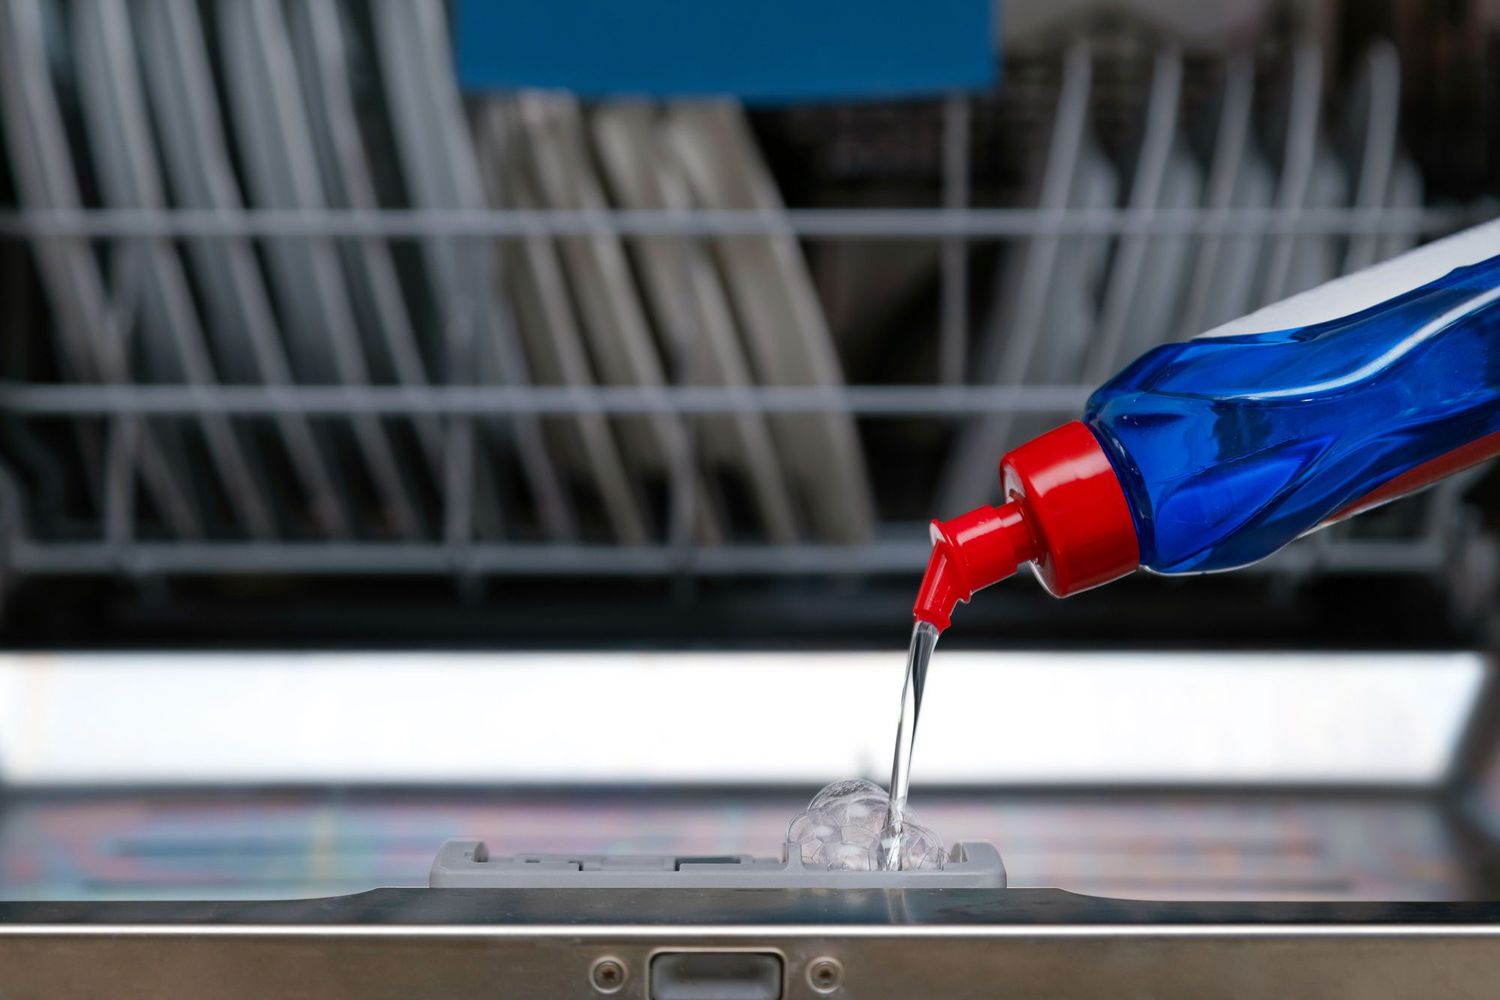 8 Best Dishwasher Detergent Liquid For 2023 1689140790 